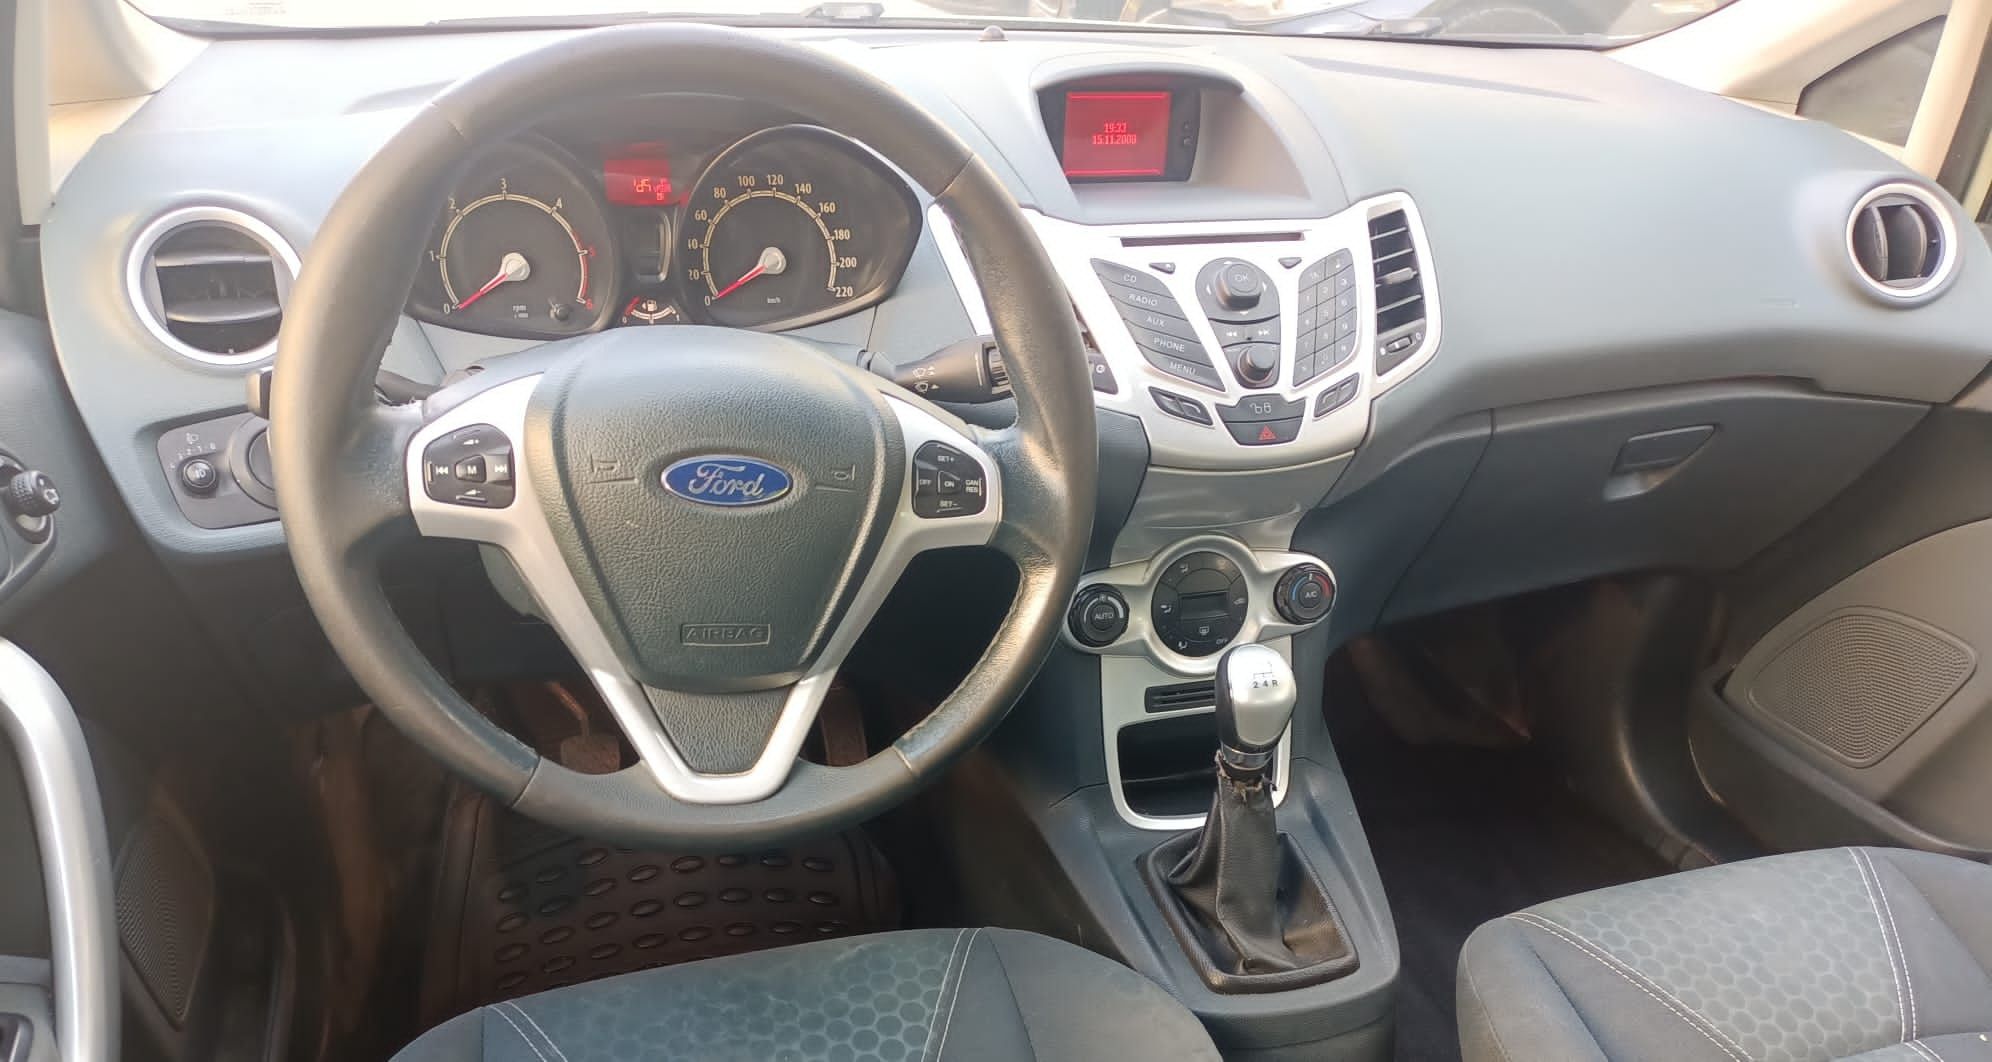 Ford Fiesta 1.6 Diesel